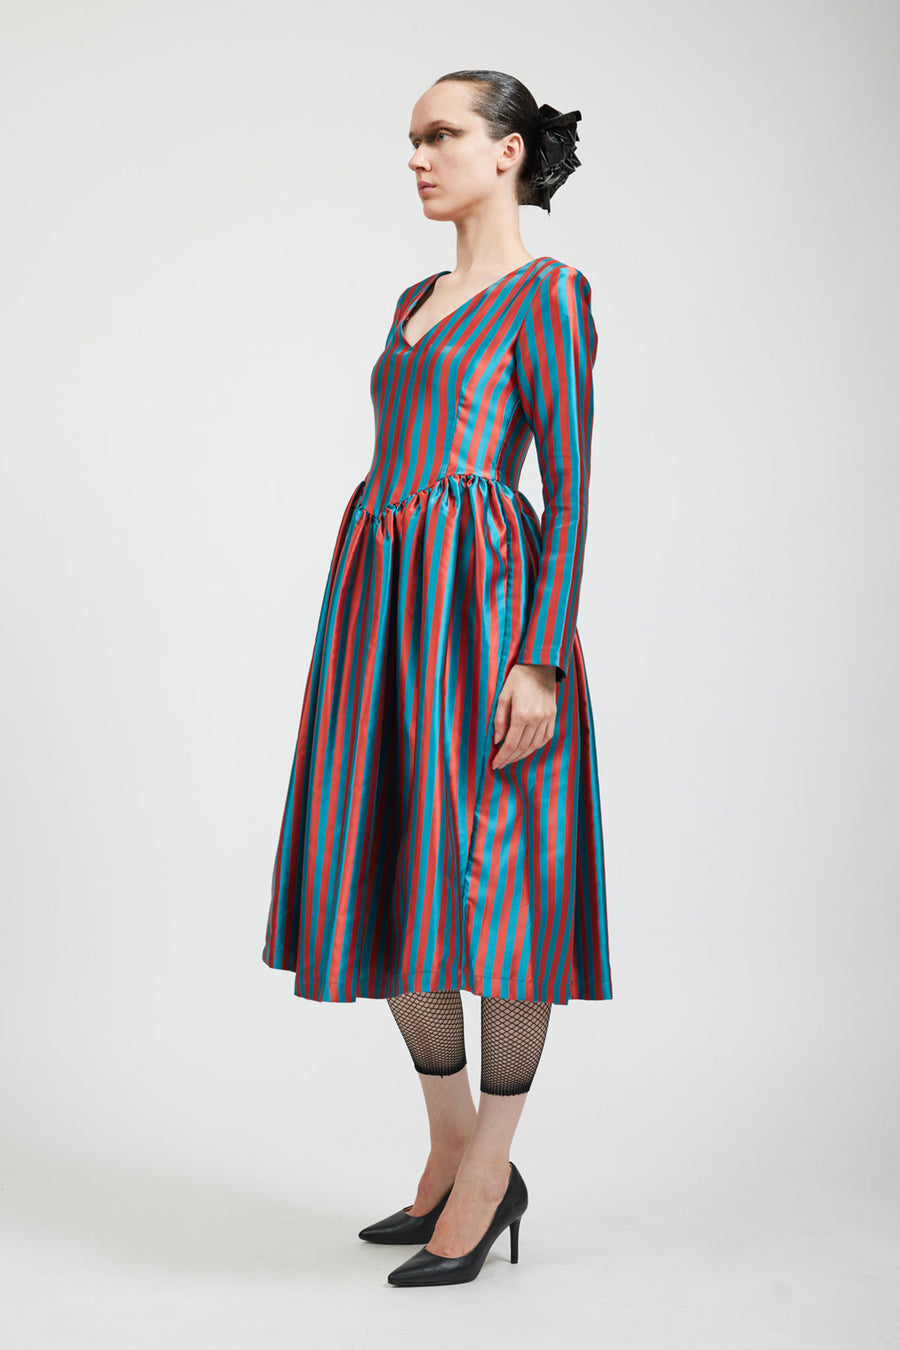 BATSHEVA - Vivienne Dress in Teal/Rust Stripe